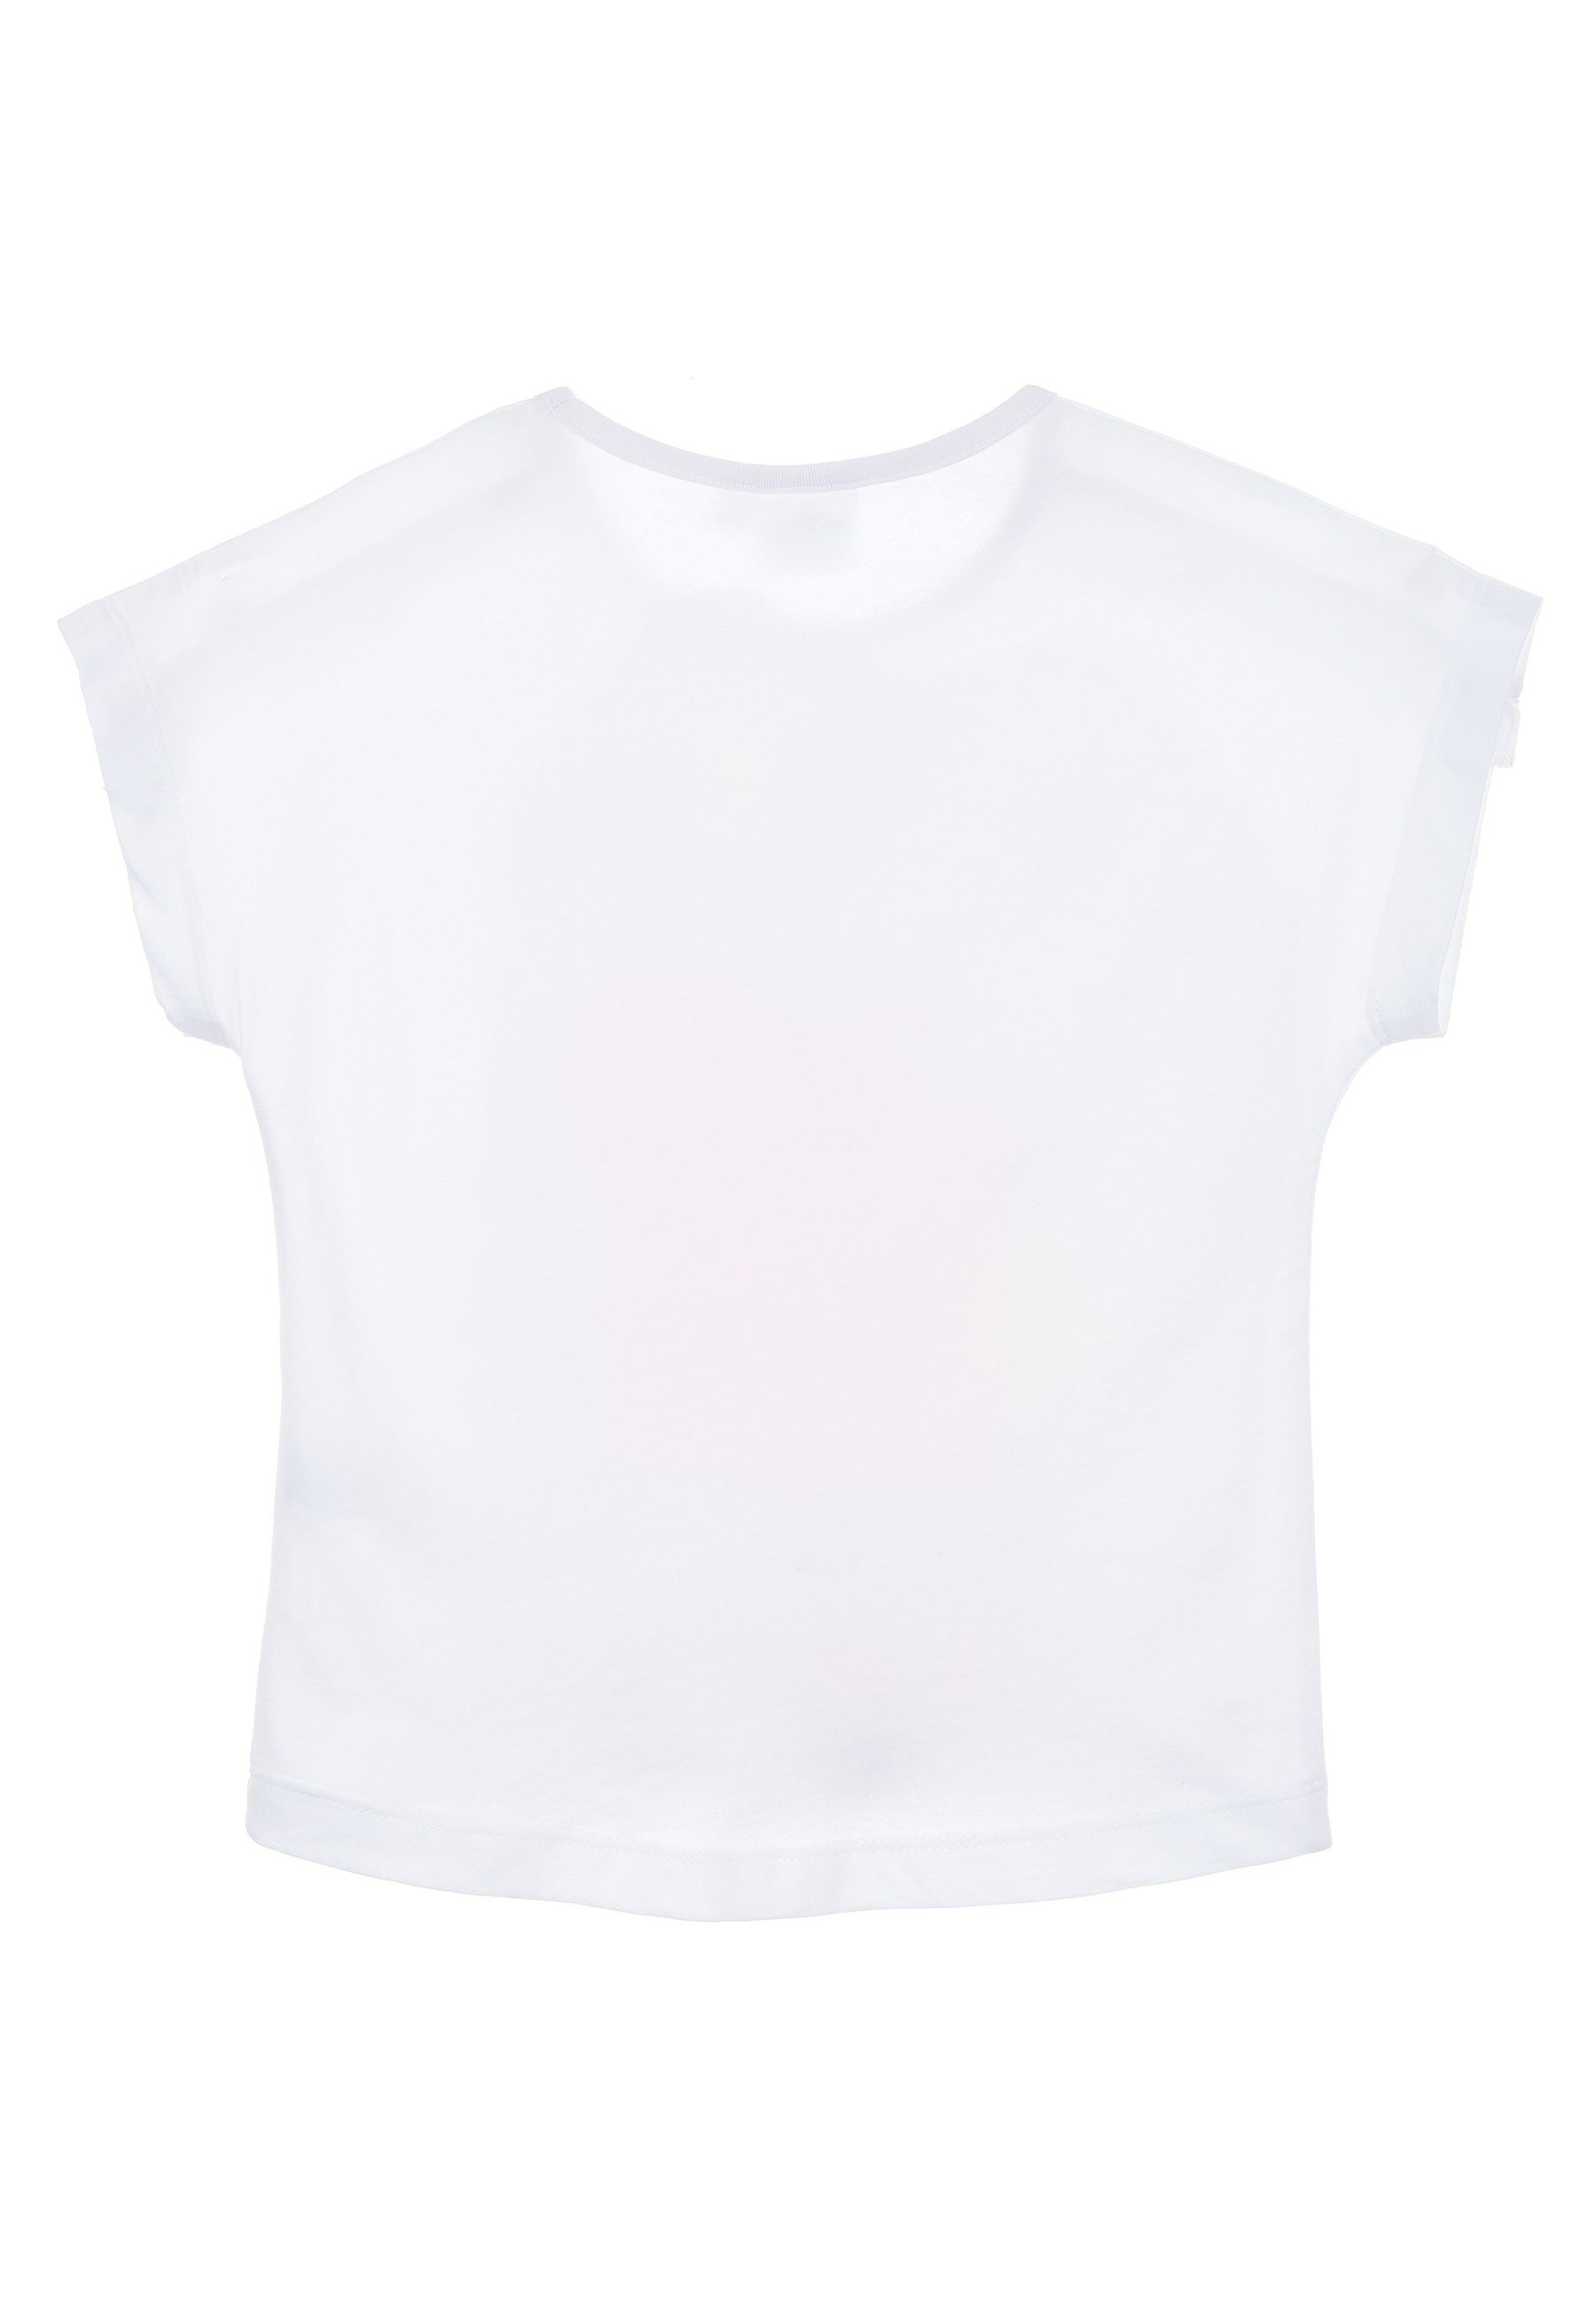 Kurzarm-Shirt Mädchen T-Shirt Oberteil Pig Weiß Peppa